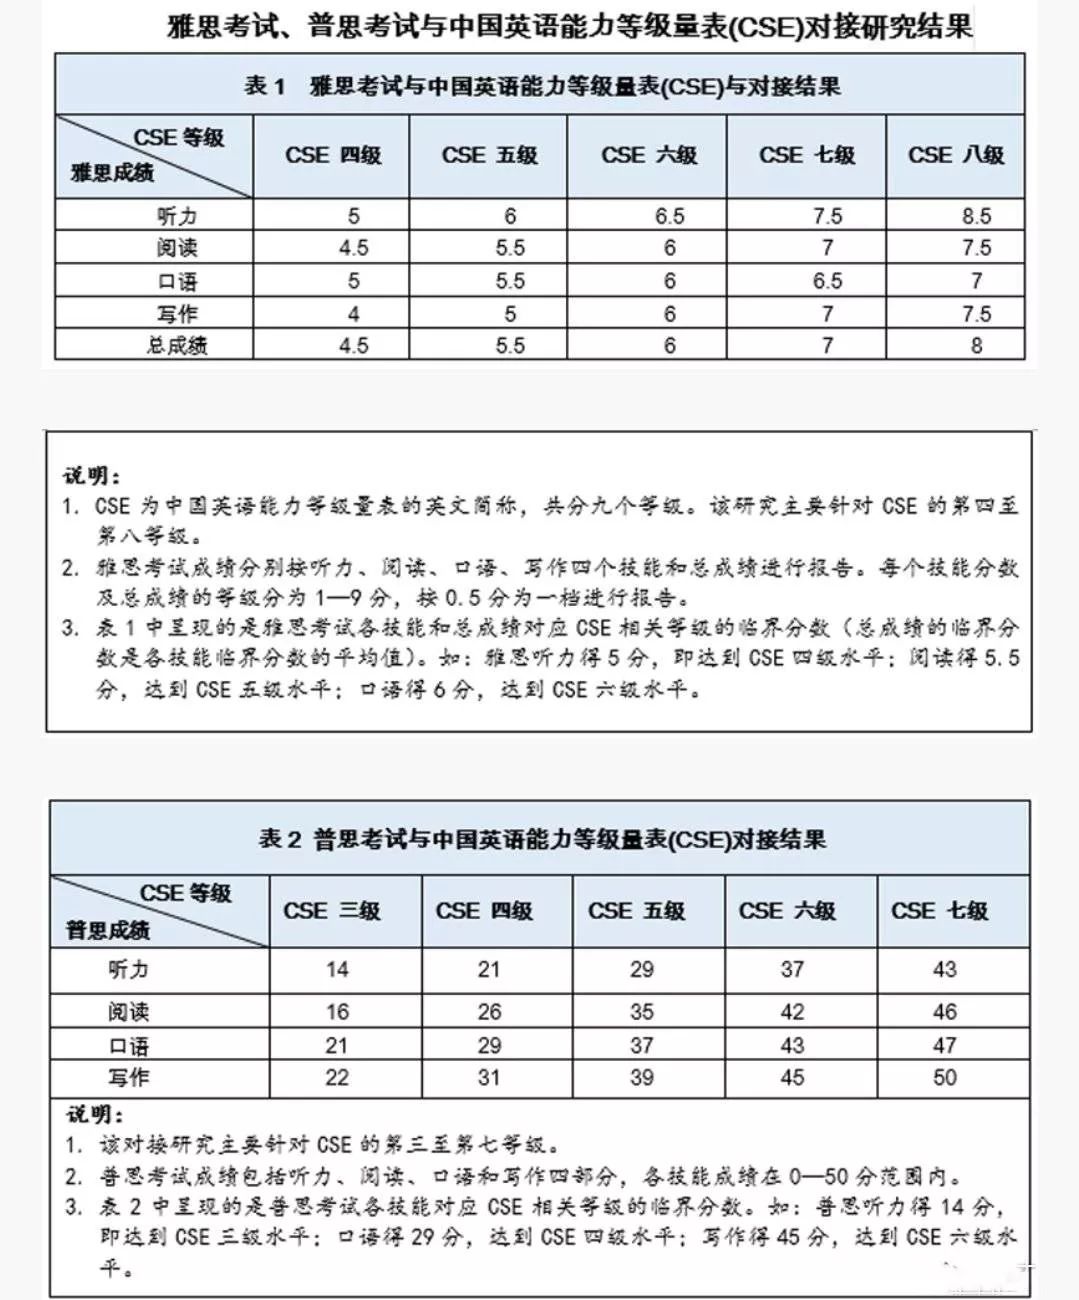 雅思,普思考试与中国英语能力等级量表正式对接!